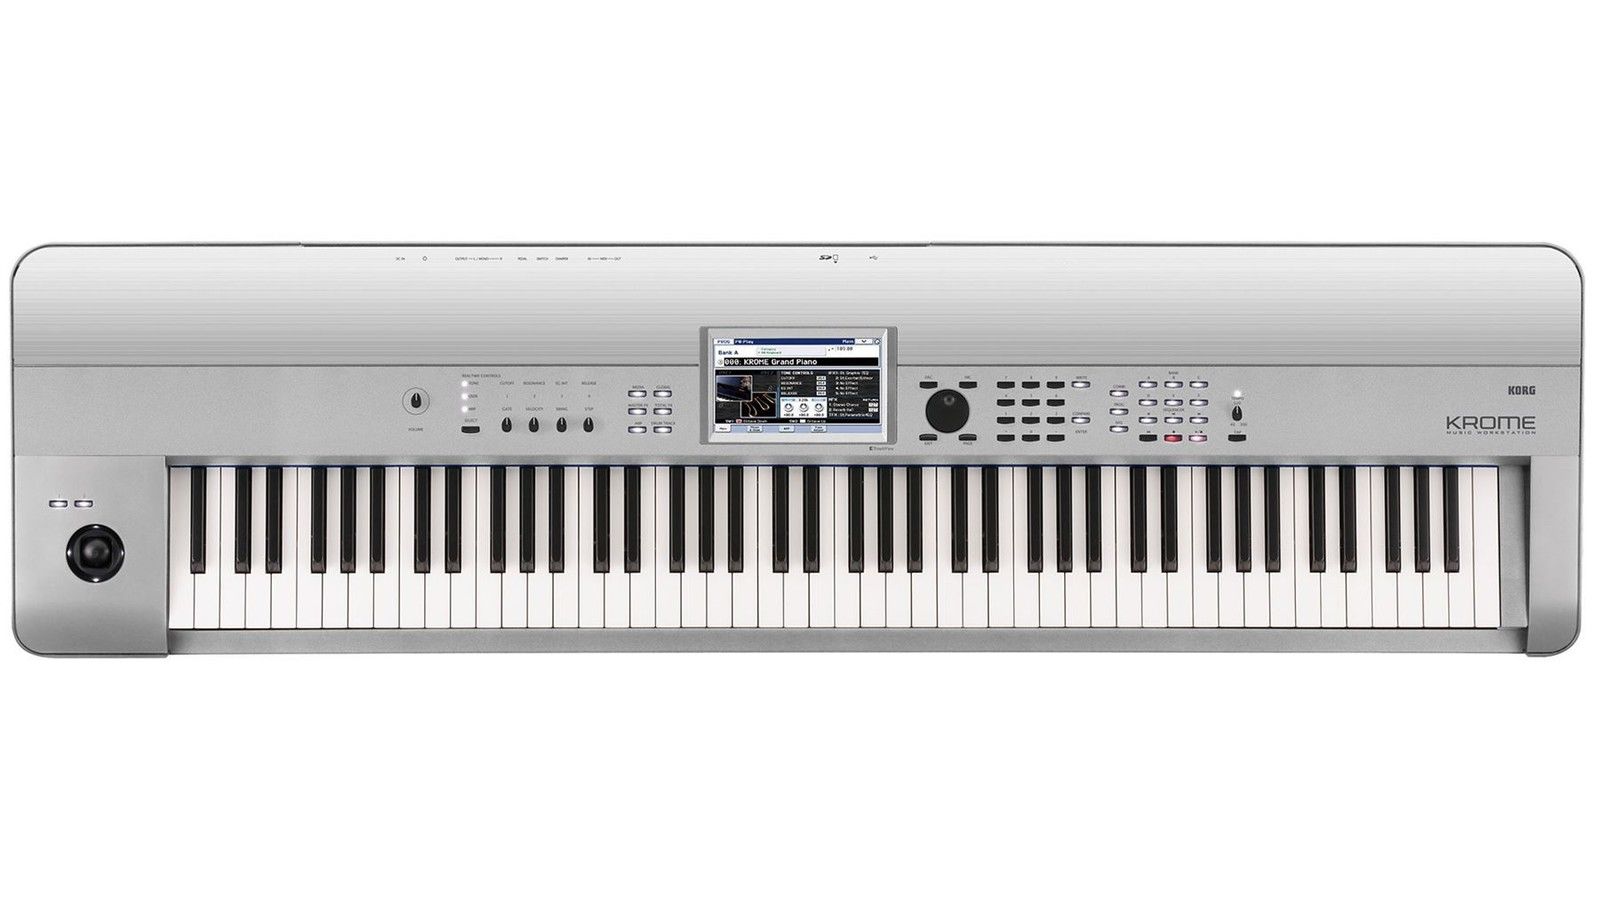 Krome 88 Keyboard Workstation Platinum